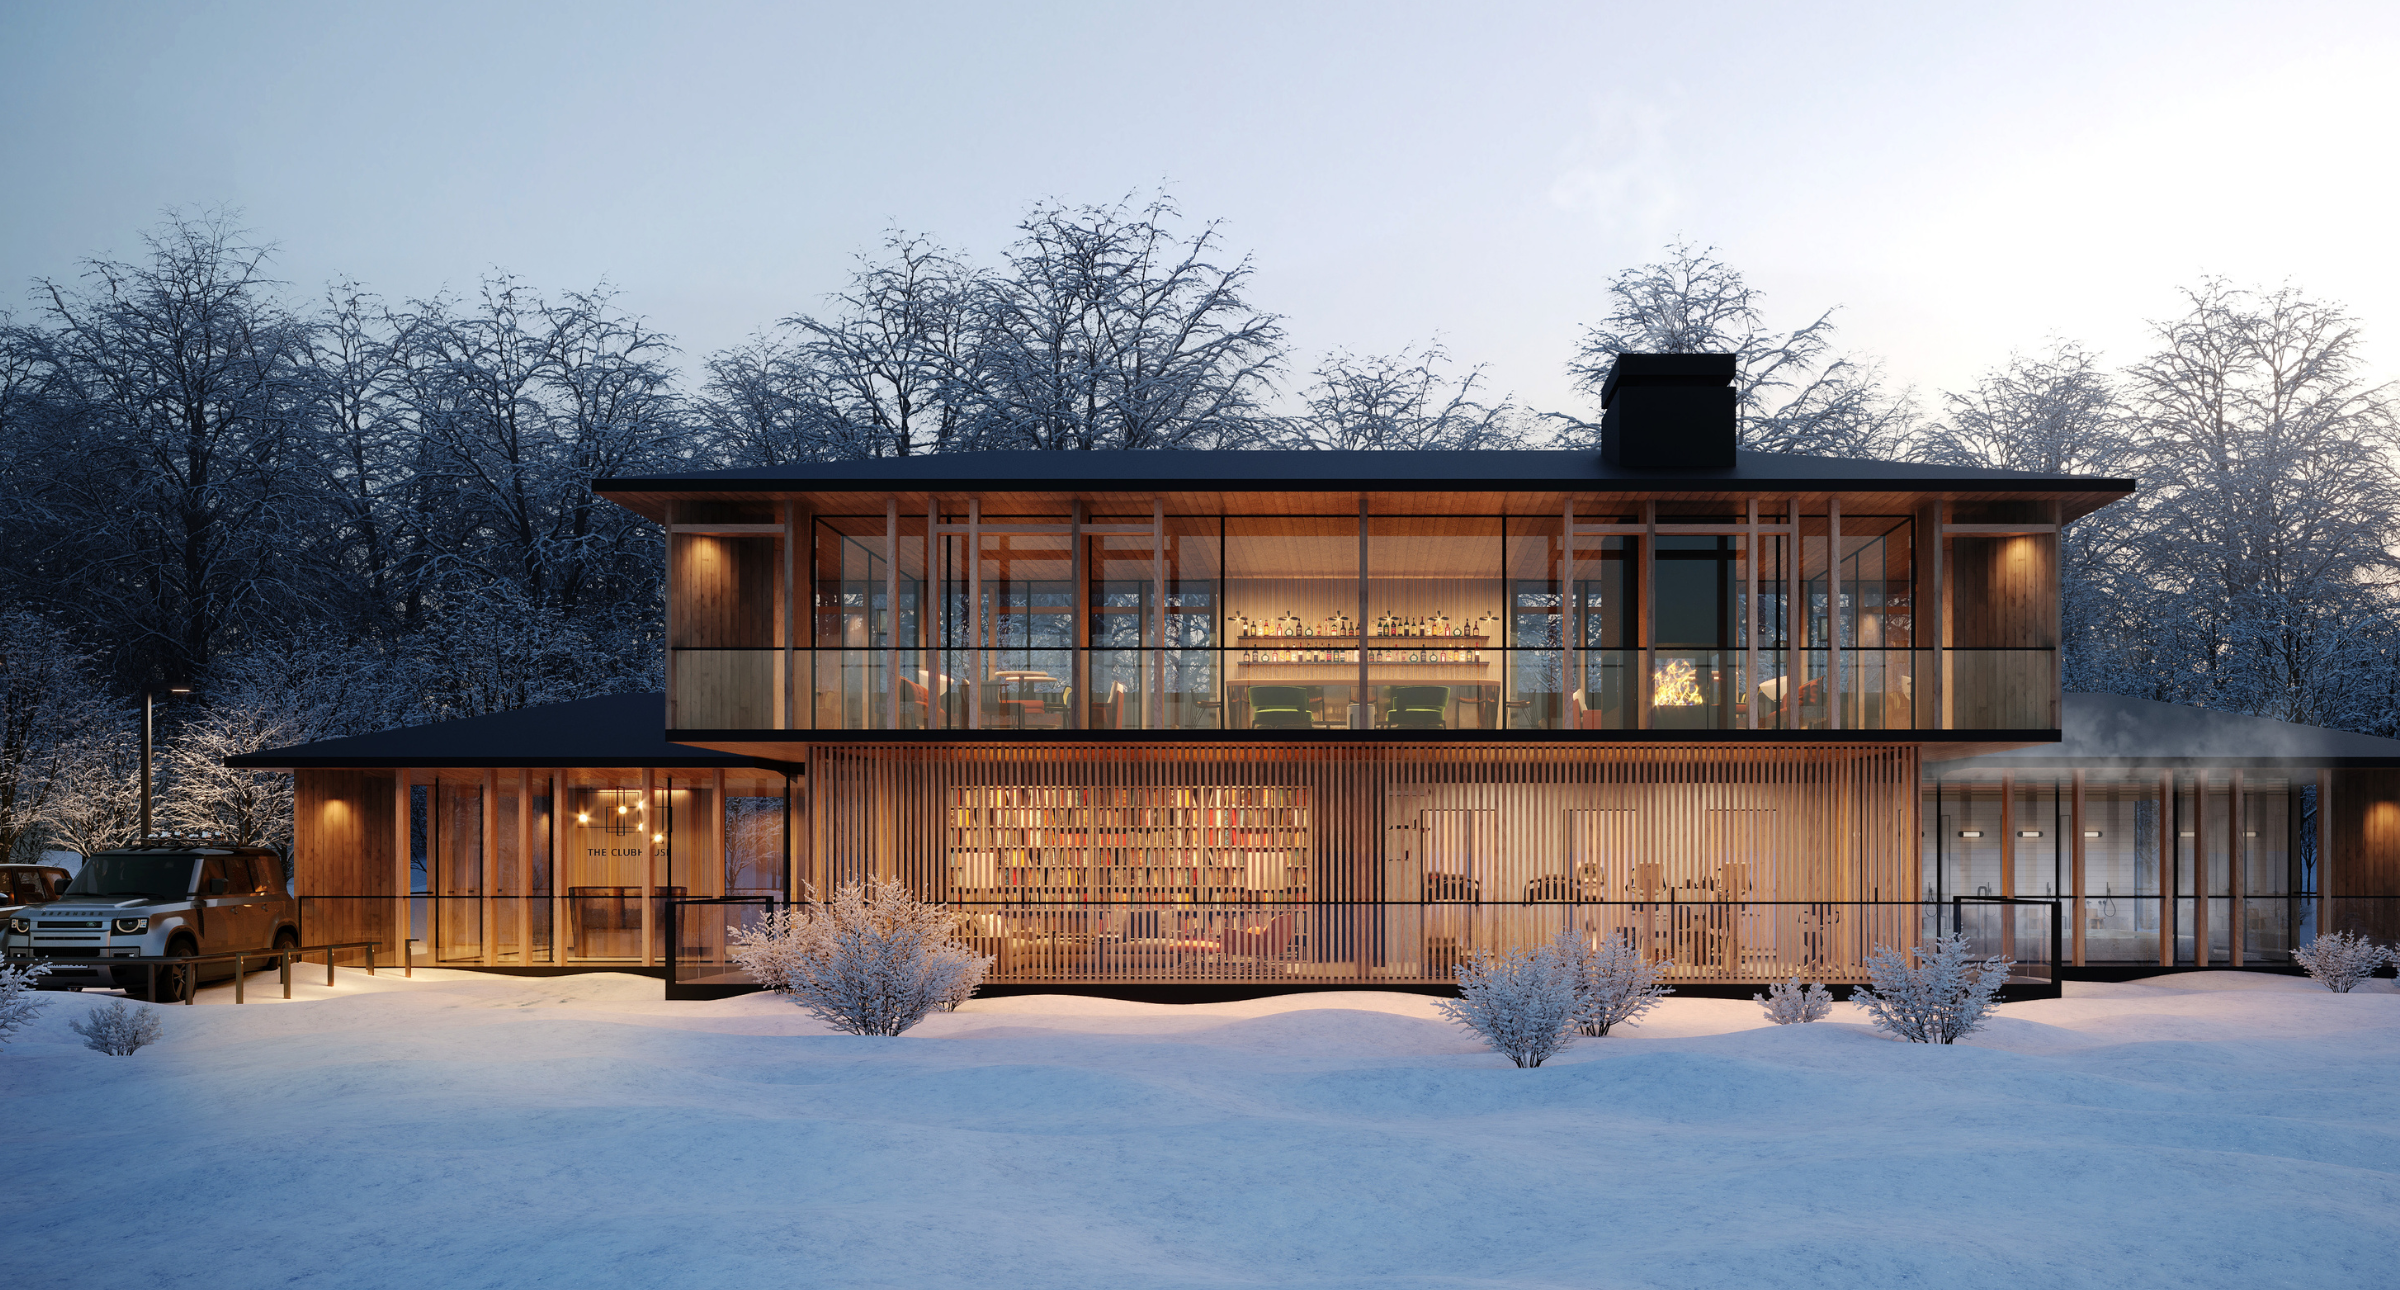 【#Architecture】冬雪中的唯美別墅，Odin Hills順應環境、運用自然建材打造當代奢華山莊聚落